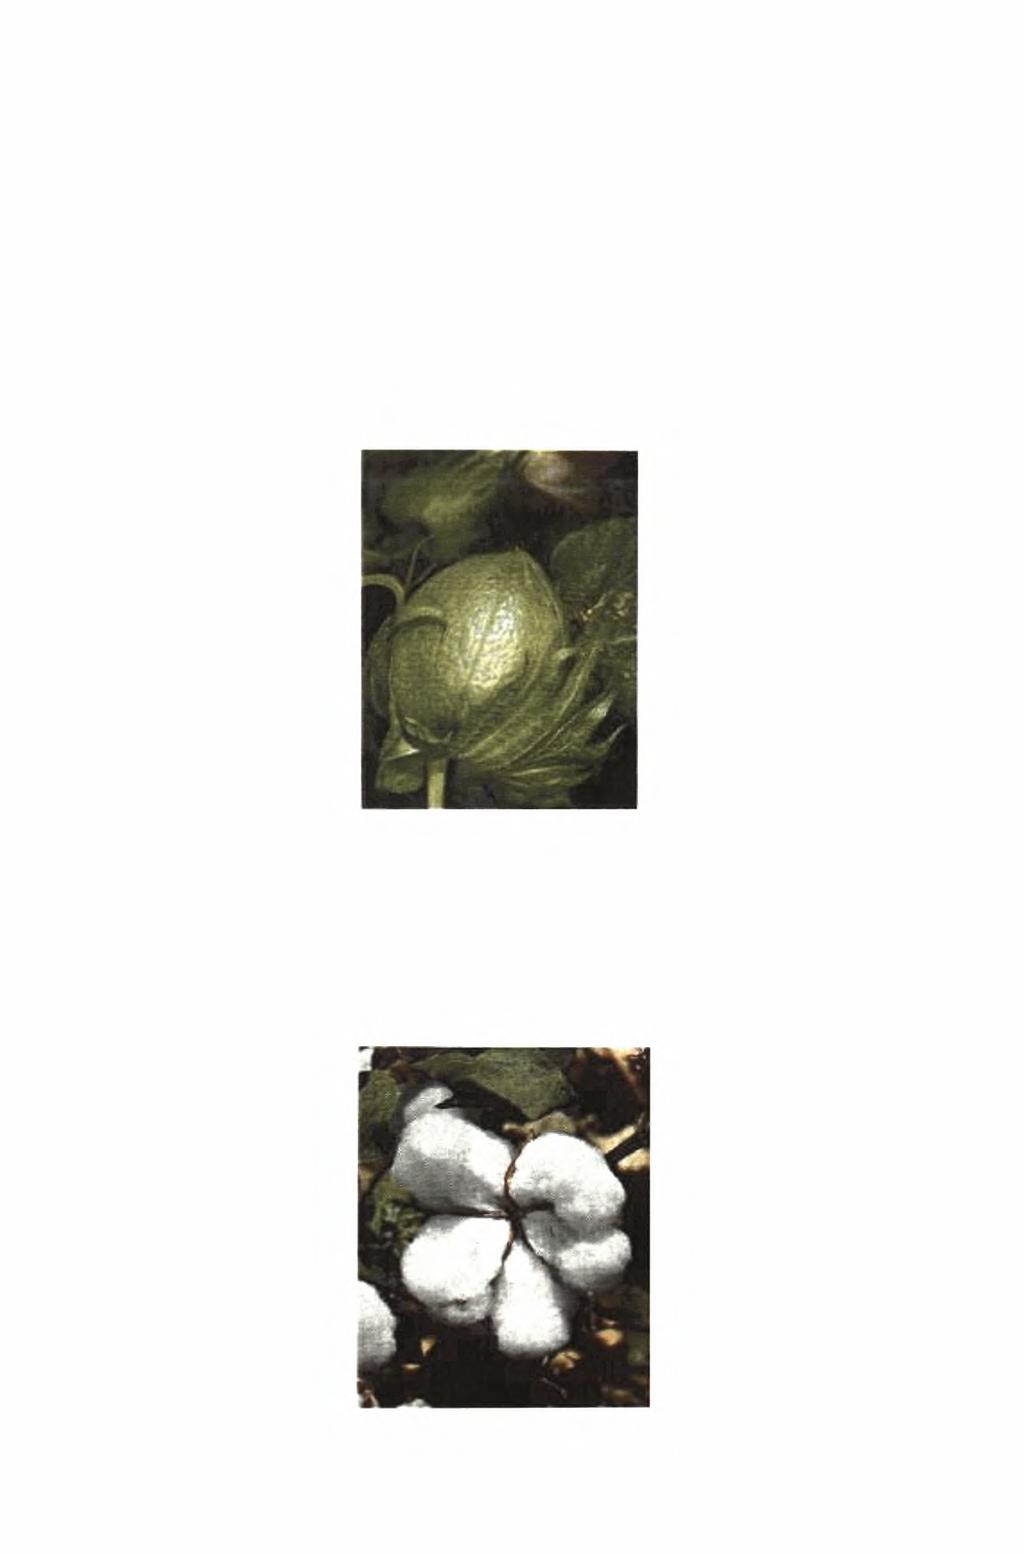 Το βαμβάκι θεωρείται πρακτικώς αυτογονιμοποιούμενο φυτό με ποσοστό ετεροεπικονίασης που κυμαίνεται συνήθως από 0 έως 10 (Γαλανοπούλου